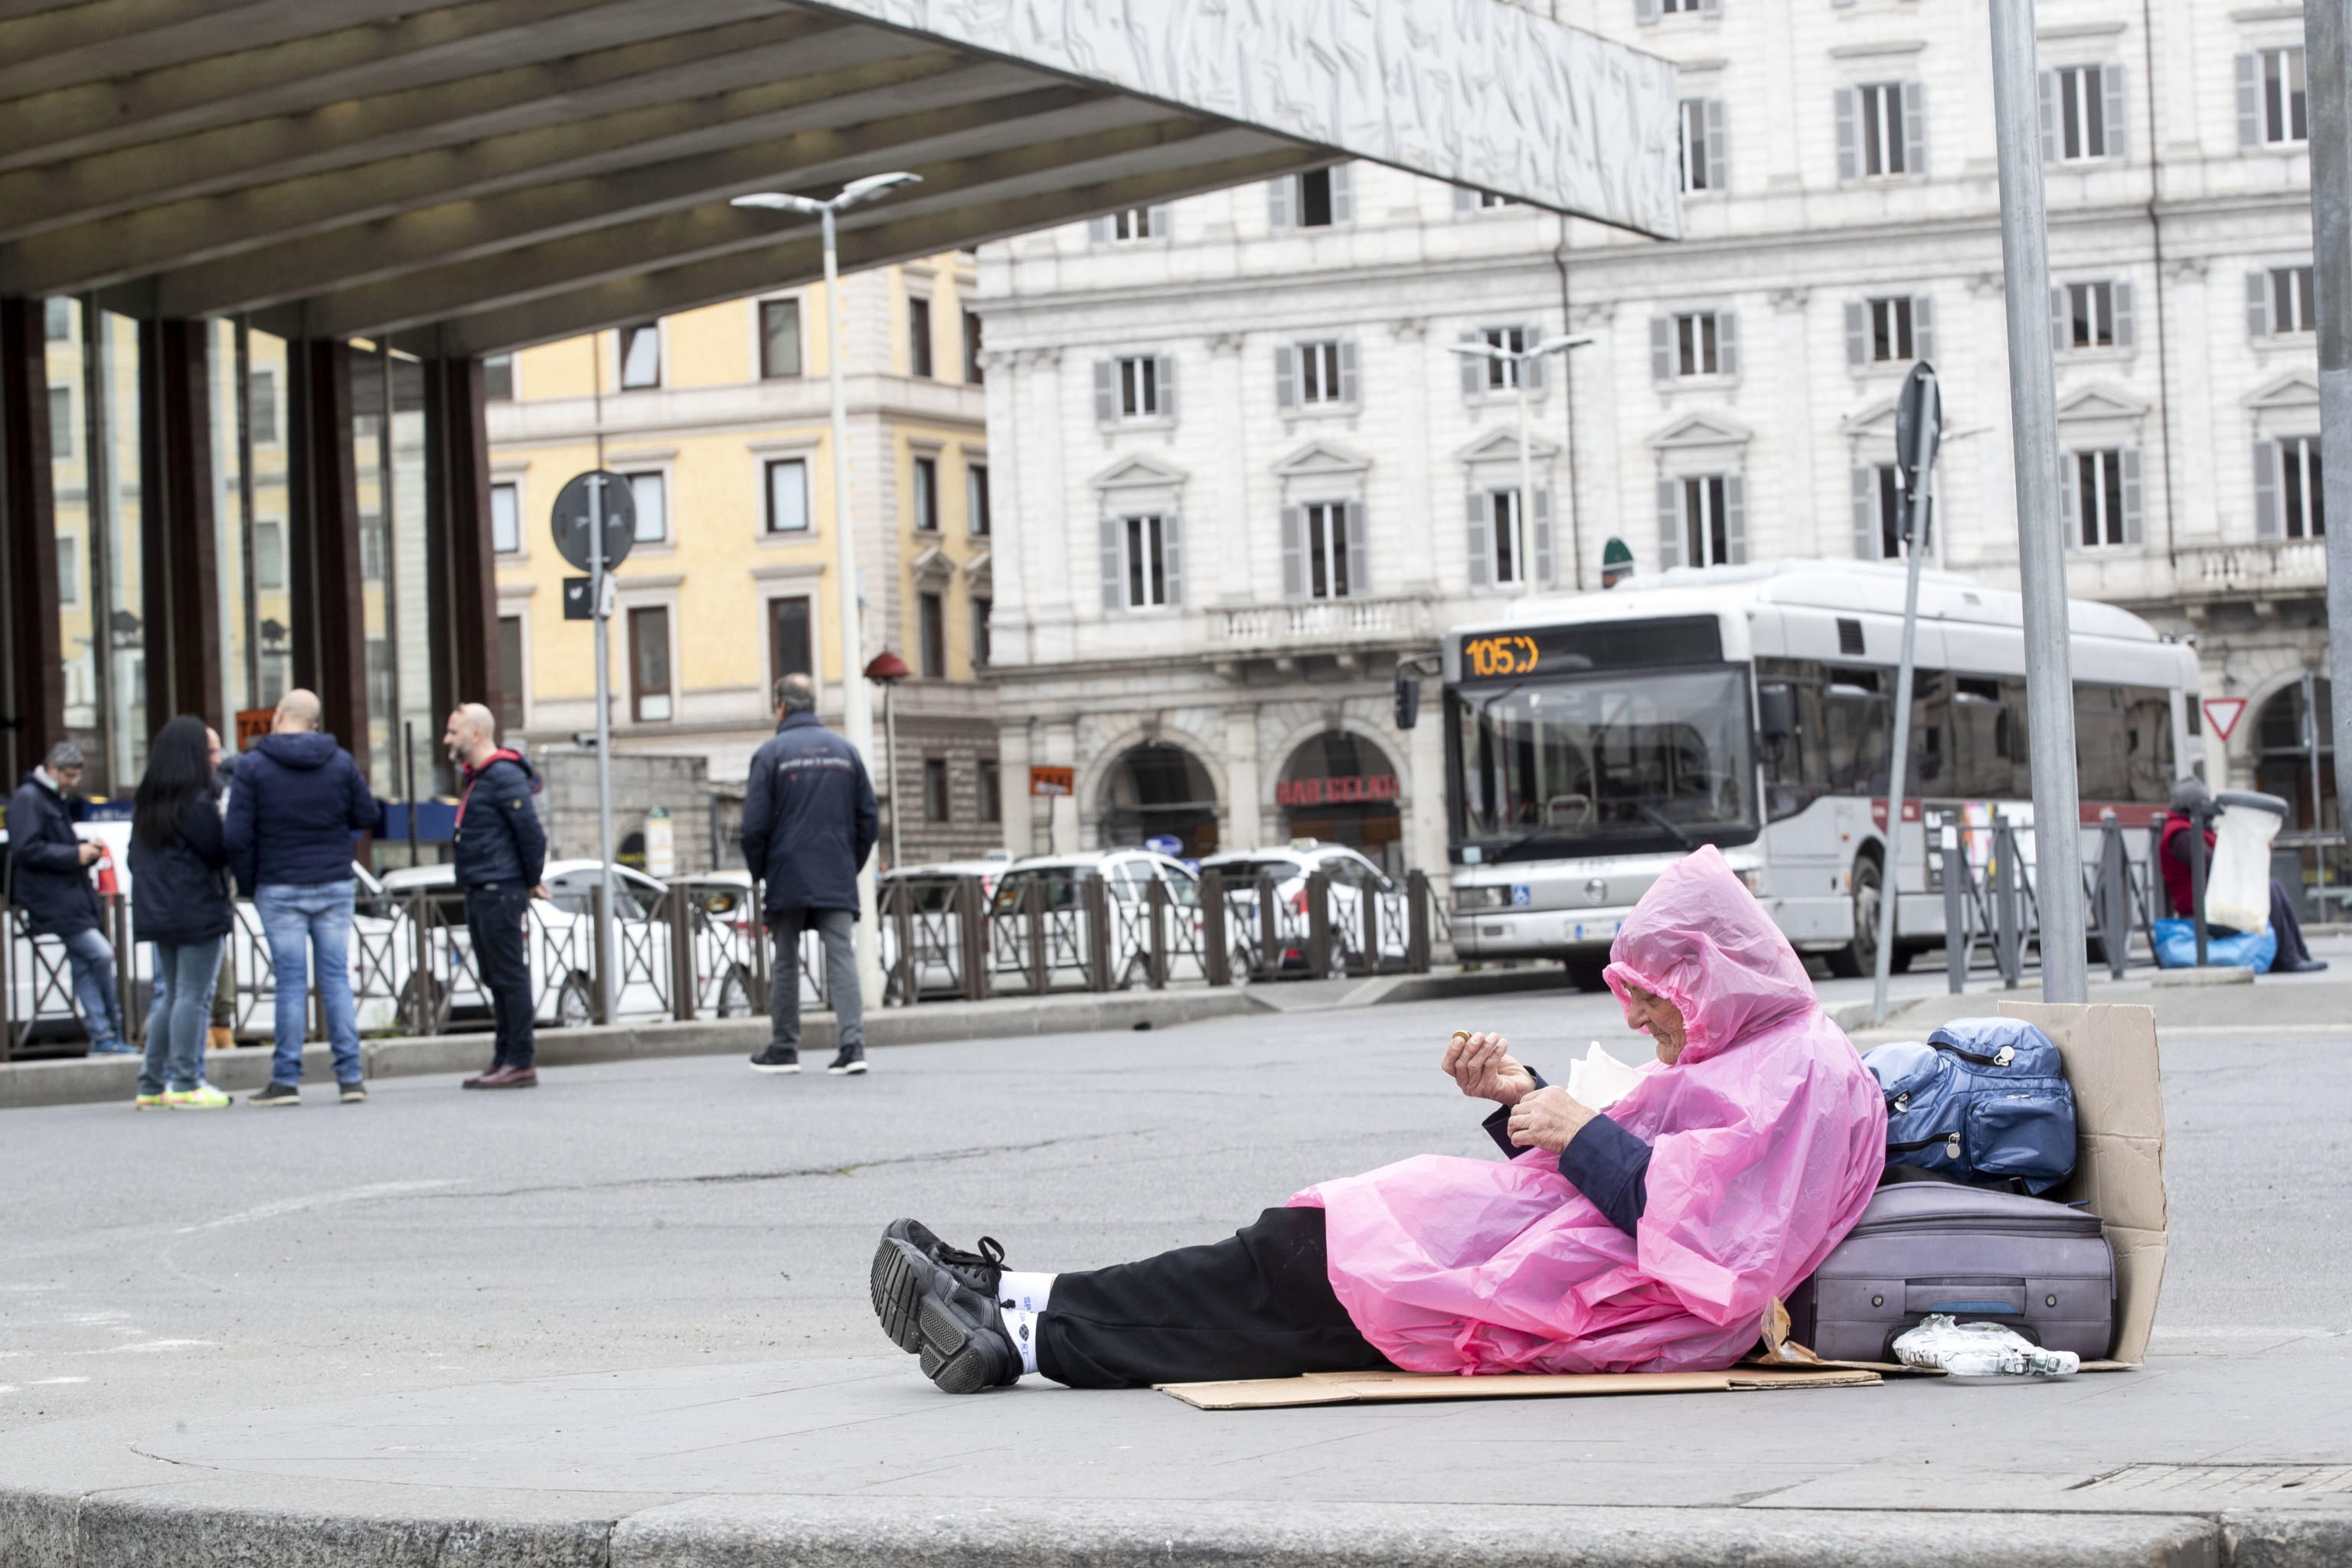 Una persona sin hogar frente a la estación de tren de Termini, Roma, Italia, el 13 de marzo de 2020. (Foto Prensa Libre: EFE).